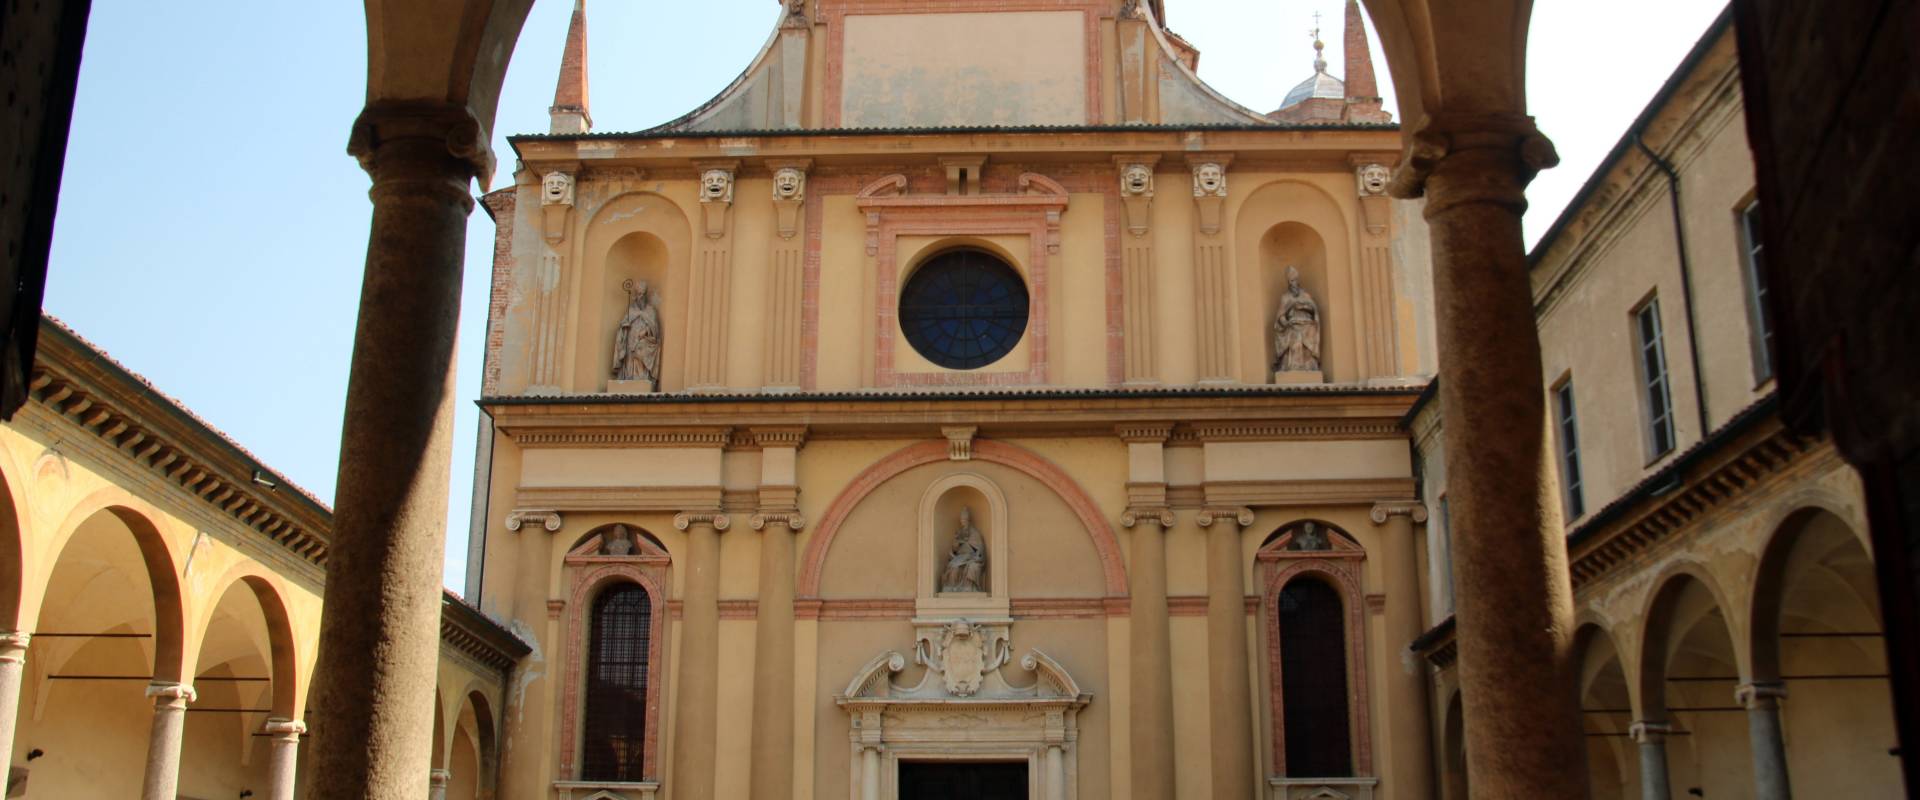 Chiesa di San Sisto (Piacenza), esterno 07 foto di Mongolo1984